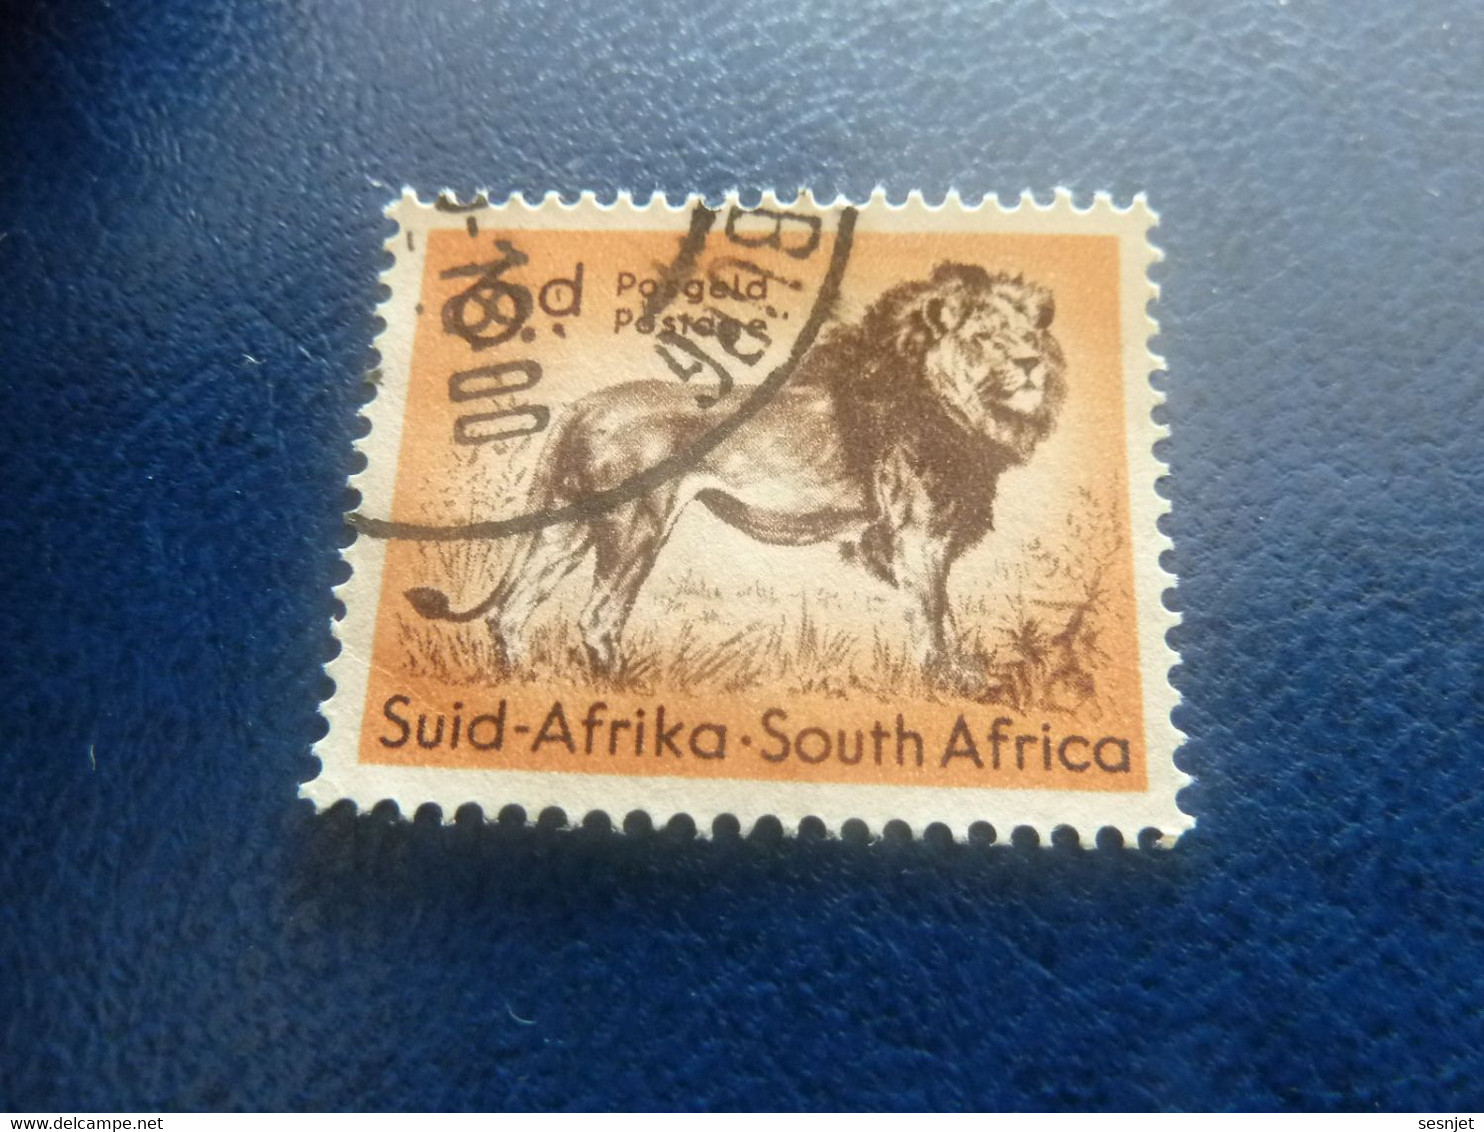 Suid-Africa - South Africa - Lion - 6 D. - Postage - Multicolore - Oblitéré - Année 1986 - - Oblitérés